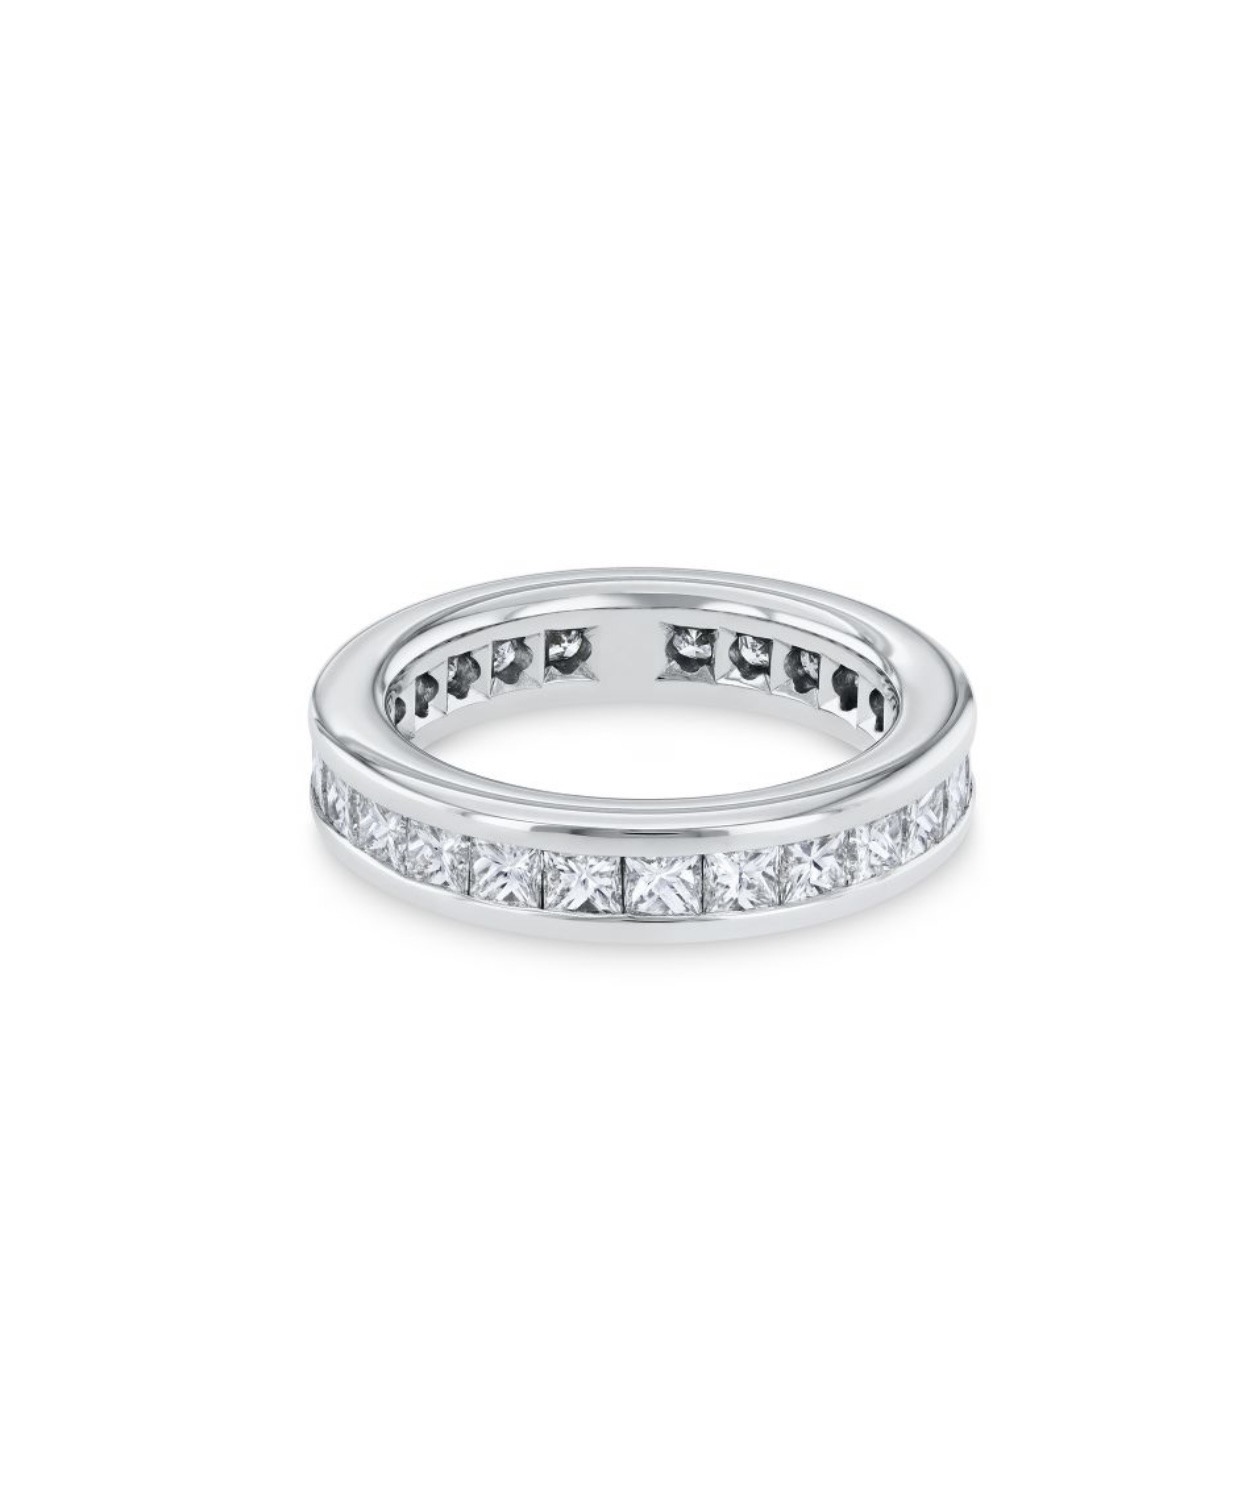 Обручальное кольцо с бриллиантами(2,40 ct.) из платины 950 пробы 